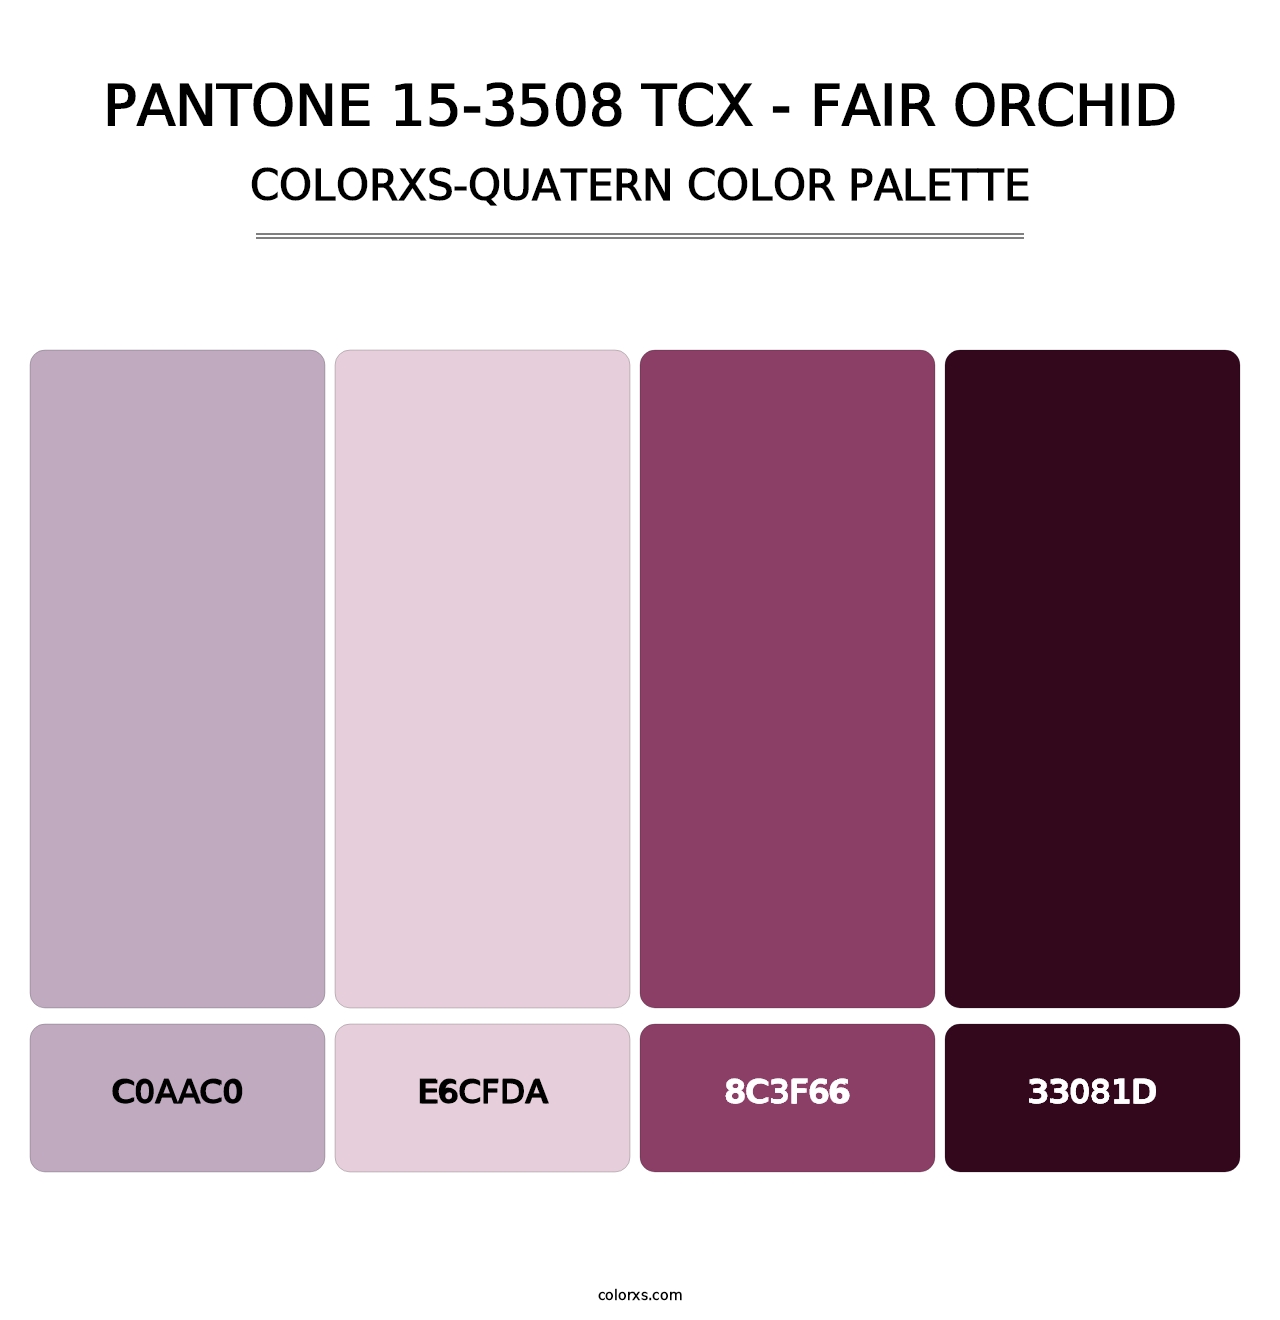 PANTONE 15-3508 TCX - Fair Orchid - Colorxs Quatern Palette